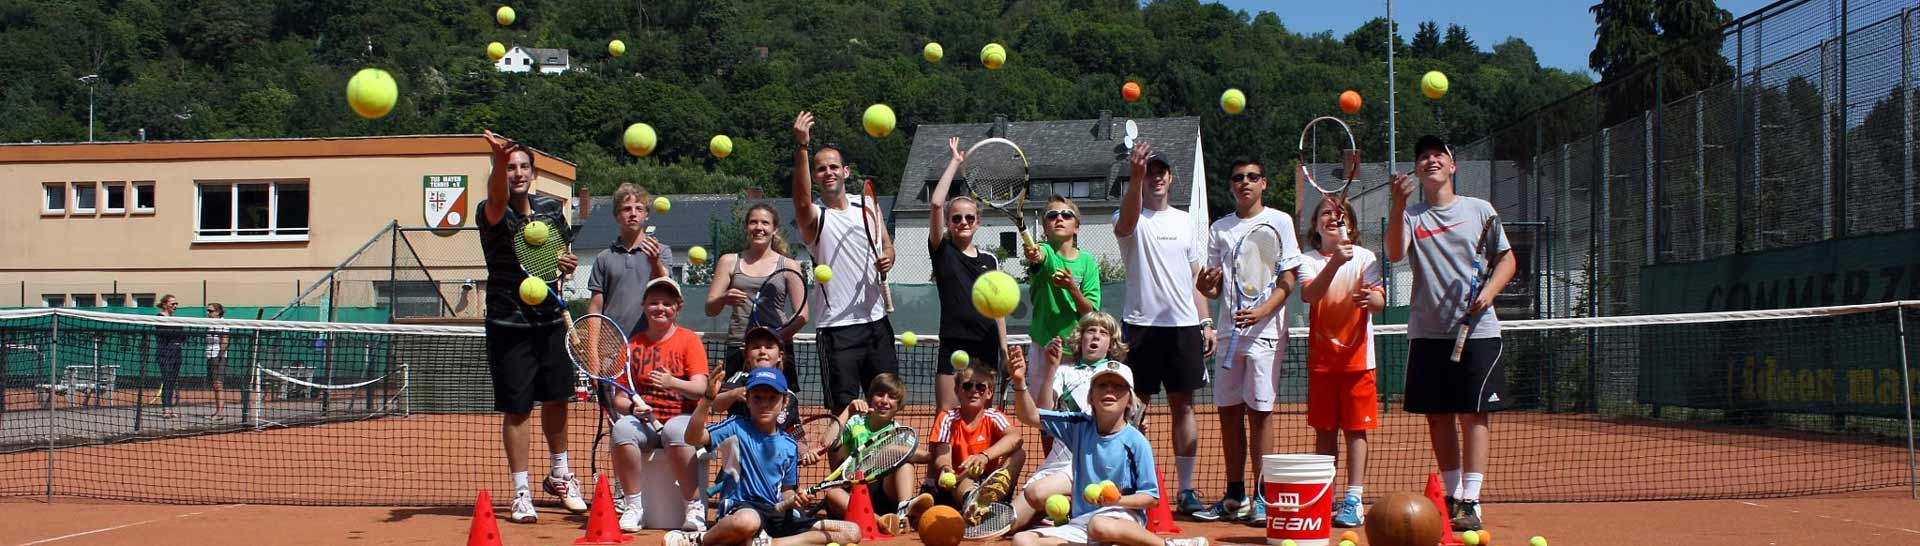 Fröhliche Kinder und Jugendliche auf einem Tennisplatz werfen Tennisbälle